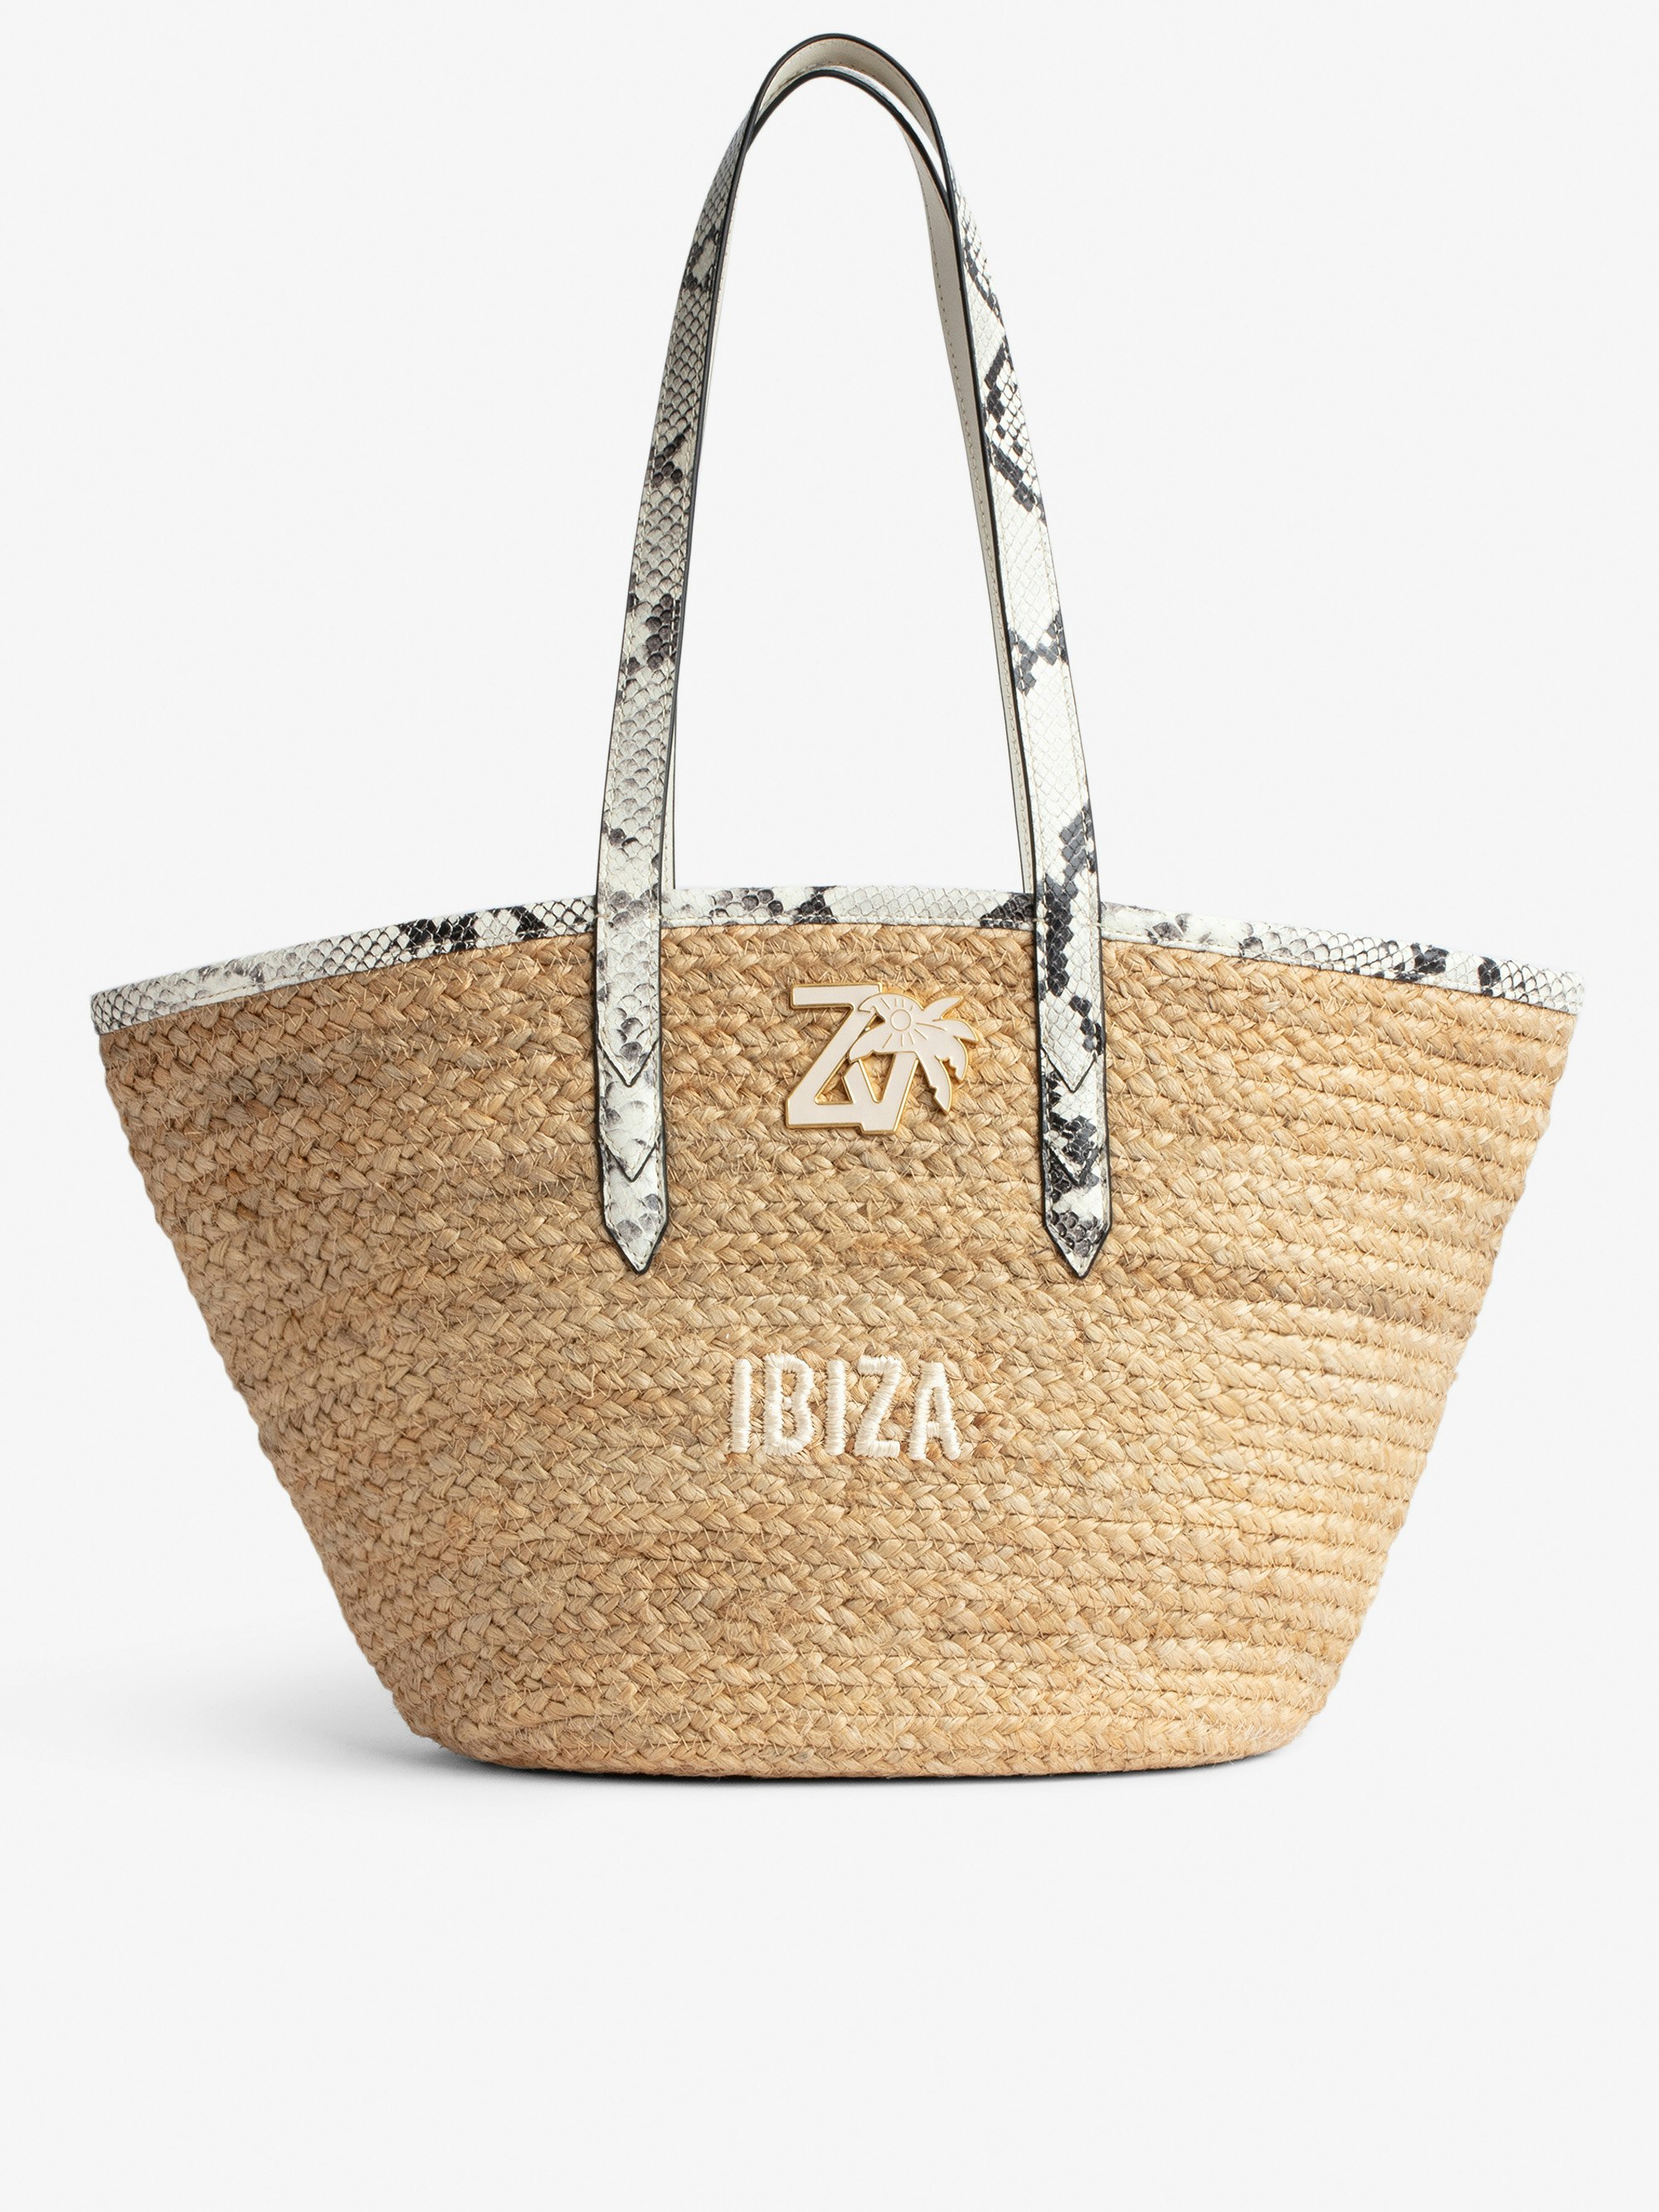 Tasche Le Beach Bag - Damen-Strohtasche mit Henkeln aus ecrufarbenem Leder in Python-Optik, „Ibiza“-Stickerei und ZV-Charm